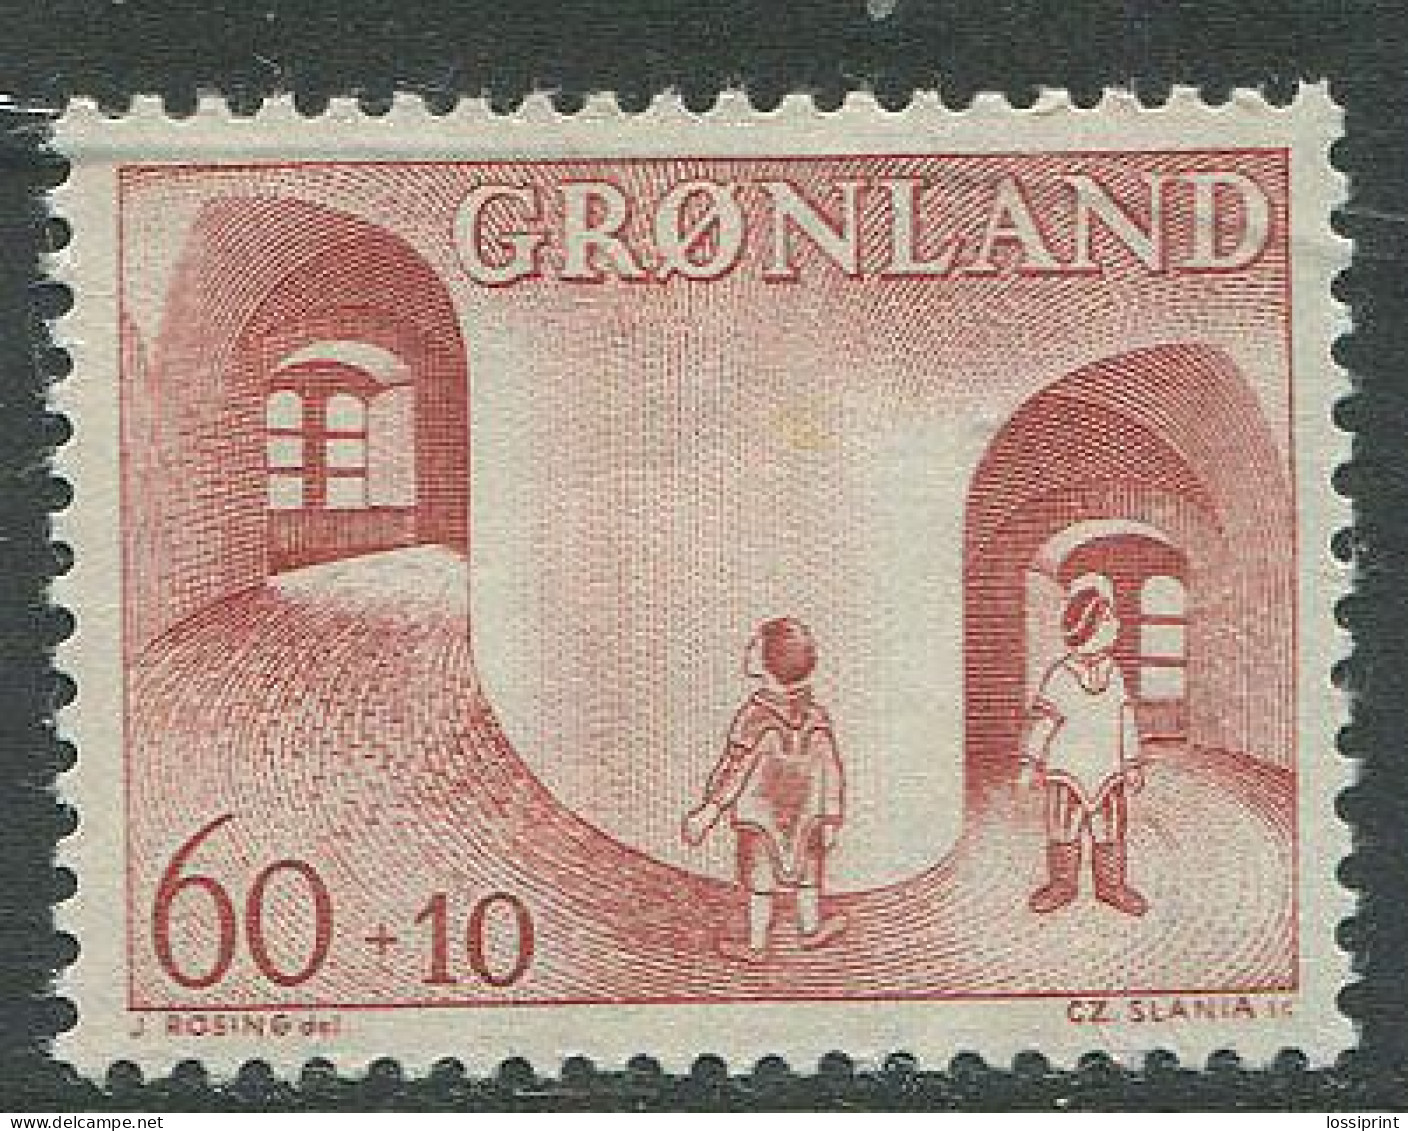 Greenland:Gronland:Unused Stamp, MNH - Ungebraucht